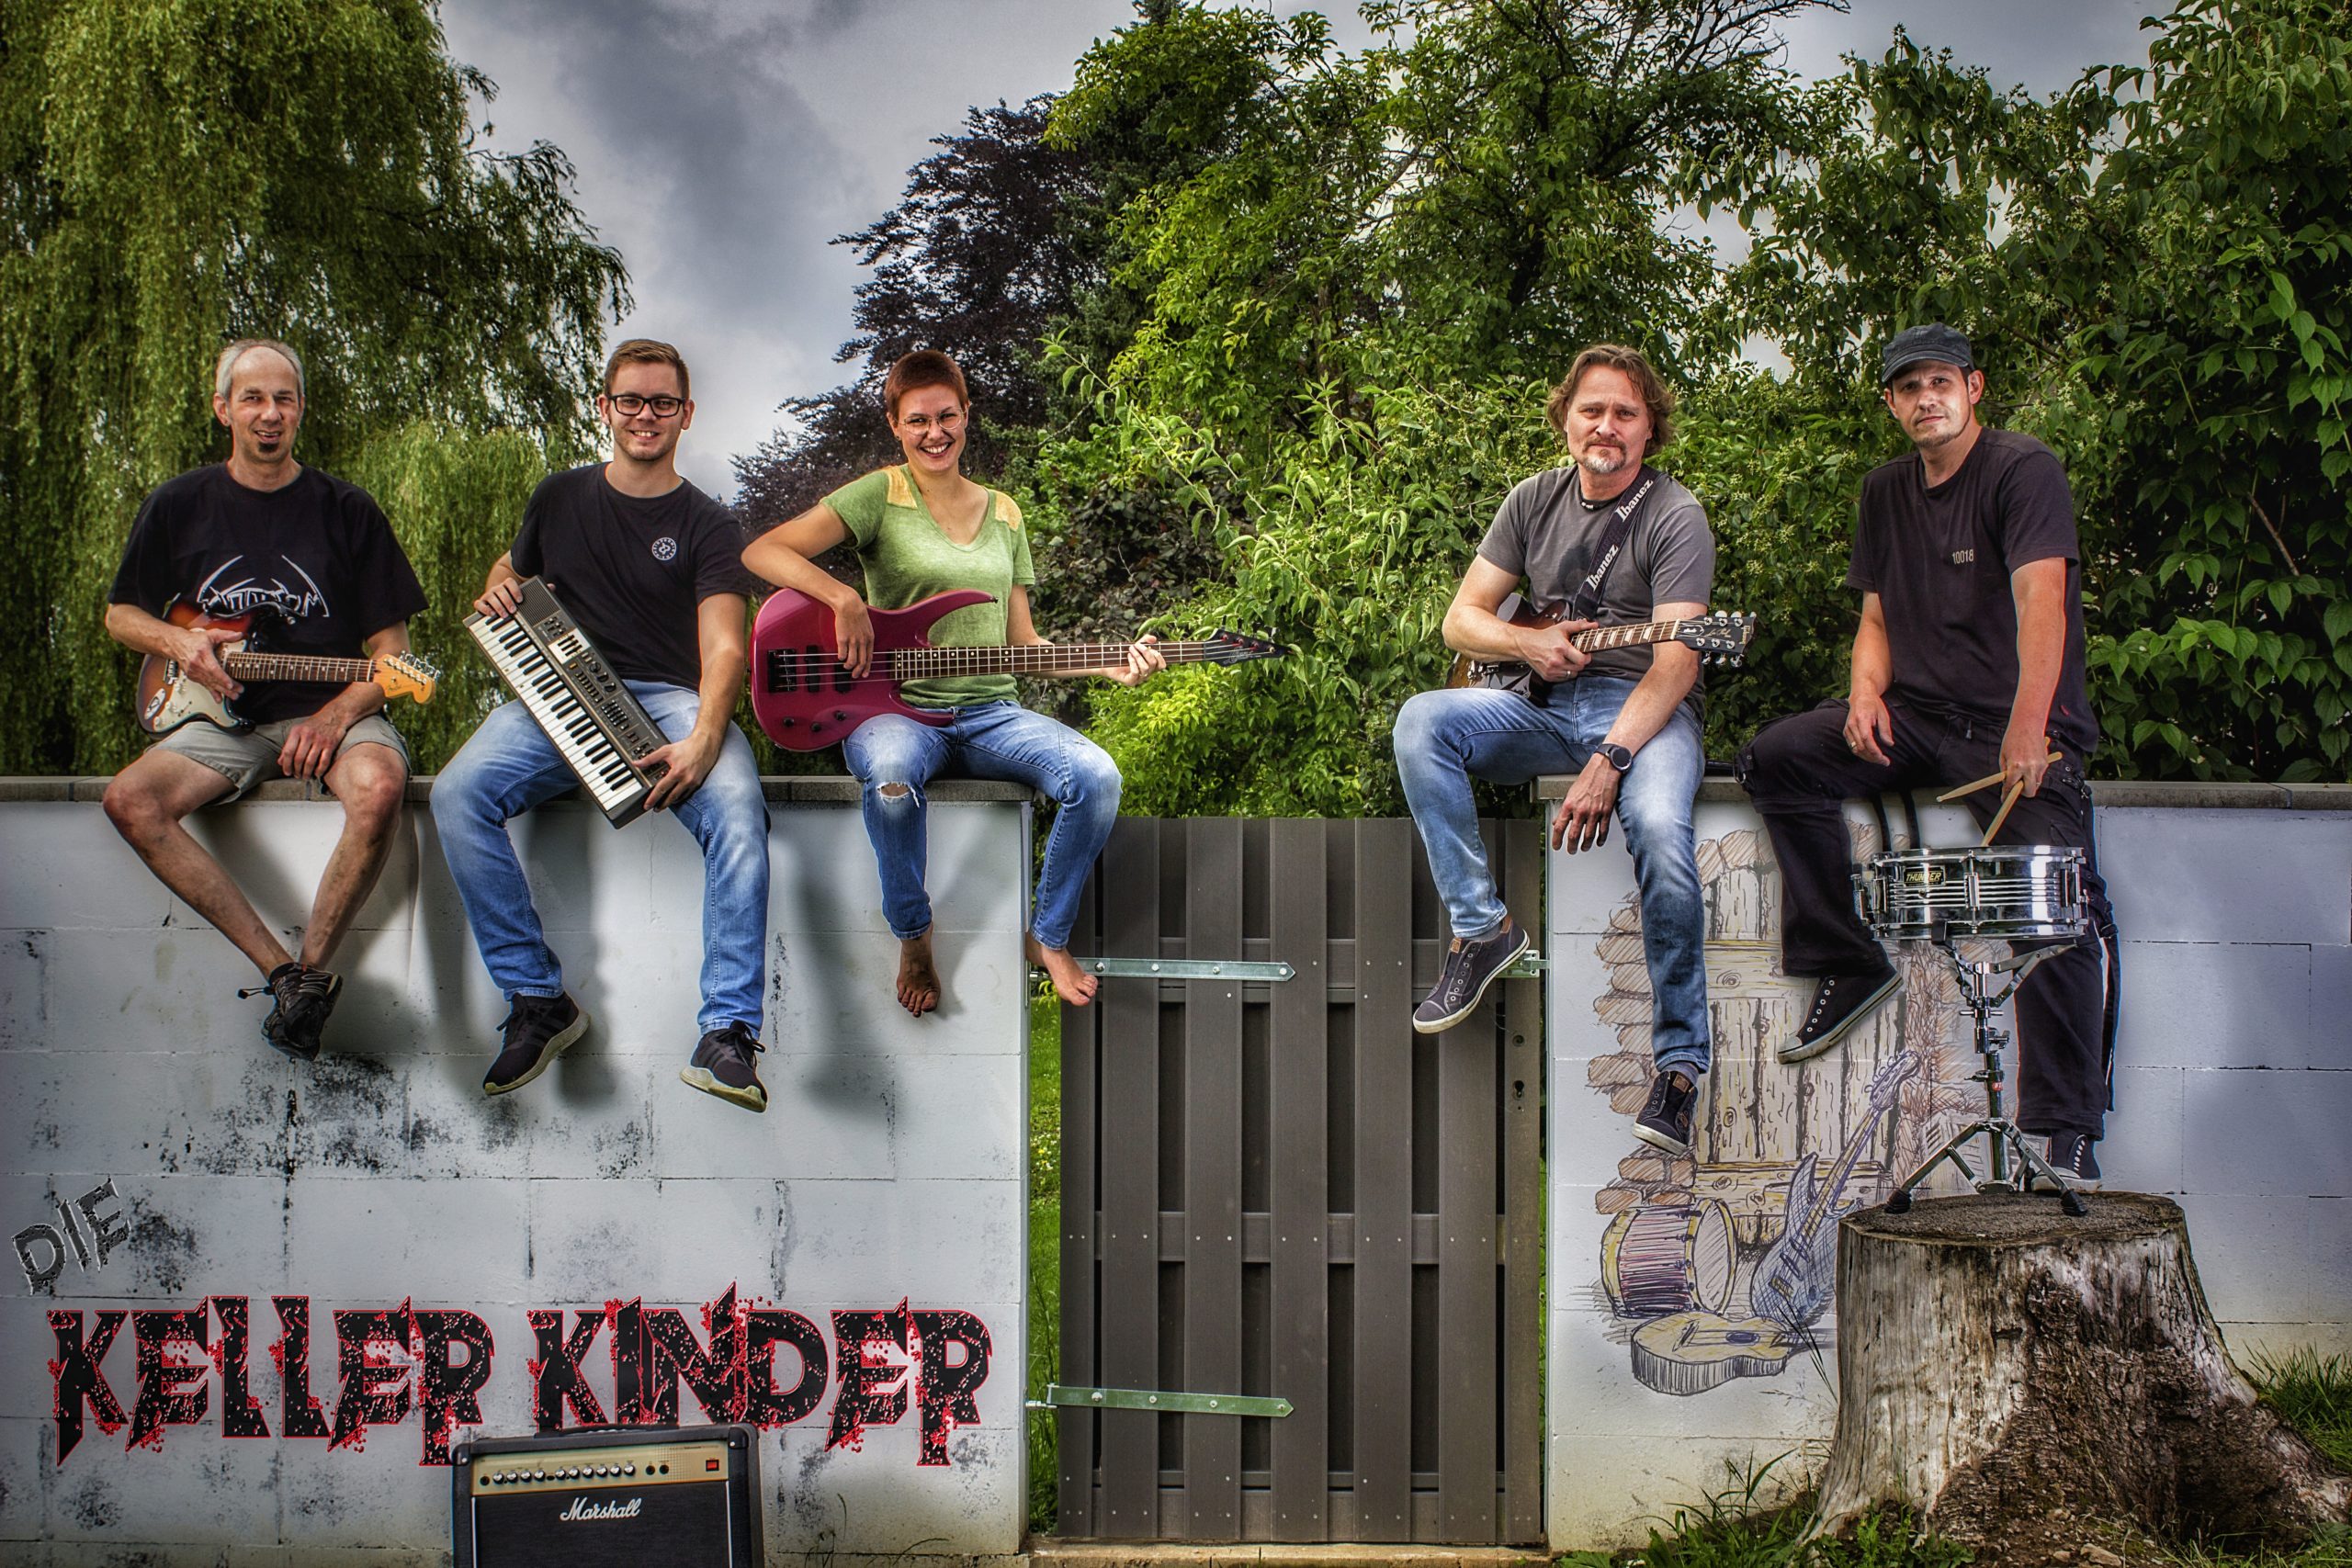 Die Kellerkinder Stefan (Gitarre), Ralf (Keys), Betti (Bass), Michael (Gitarre) und Michael (Drums) sitzen jeweils mit ihrem Instrument auf einer Mauer. Auf der Mauer ist das Bandlogo "Die Kellerkinder" in schwarz-roter Schrift.